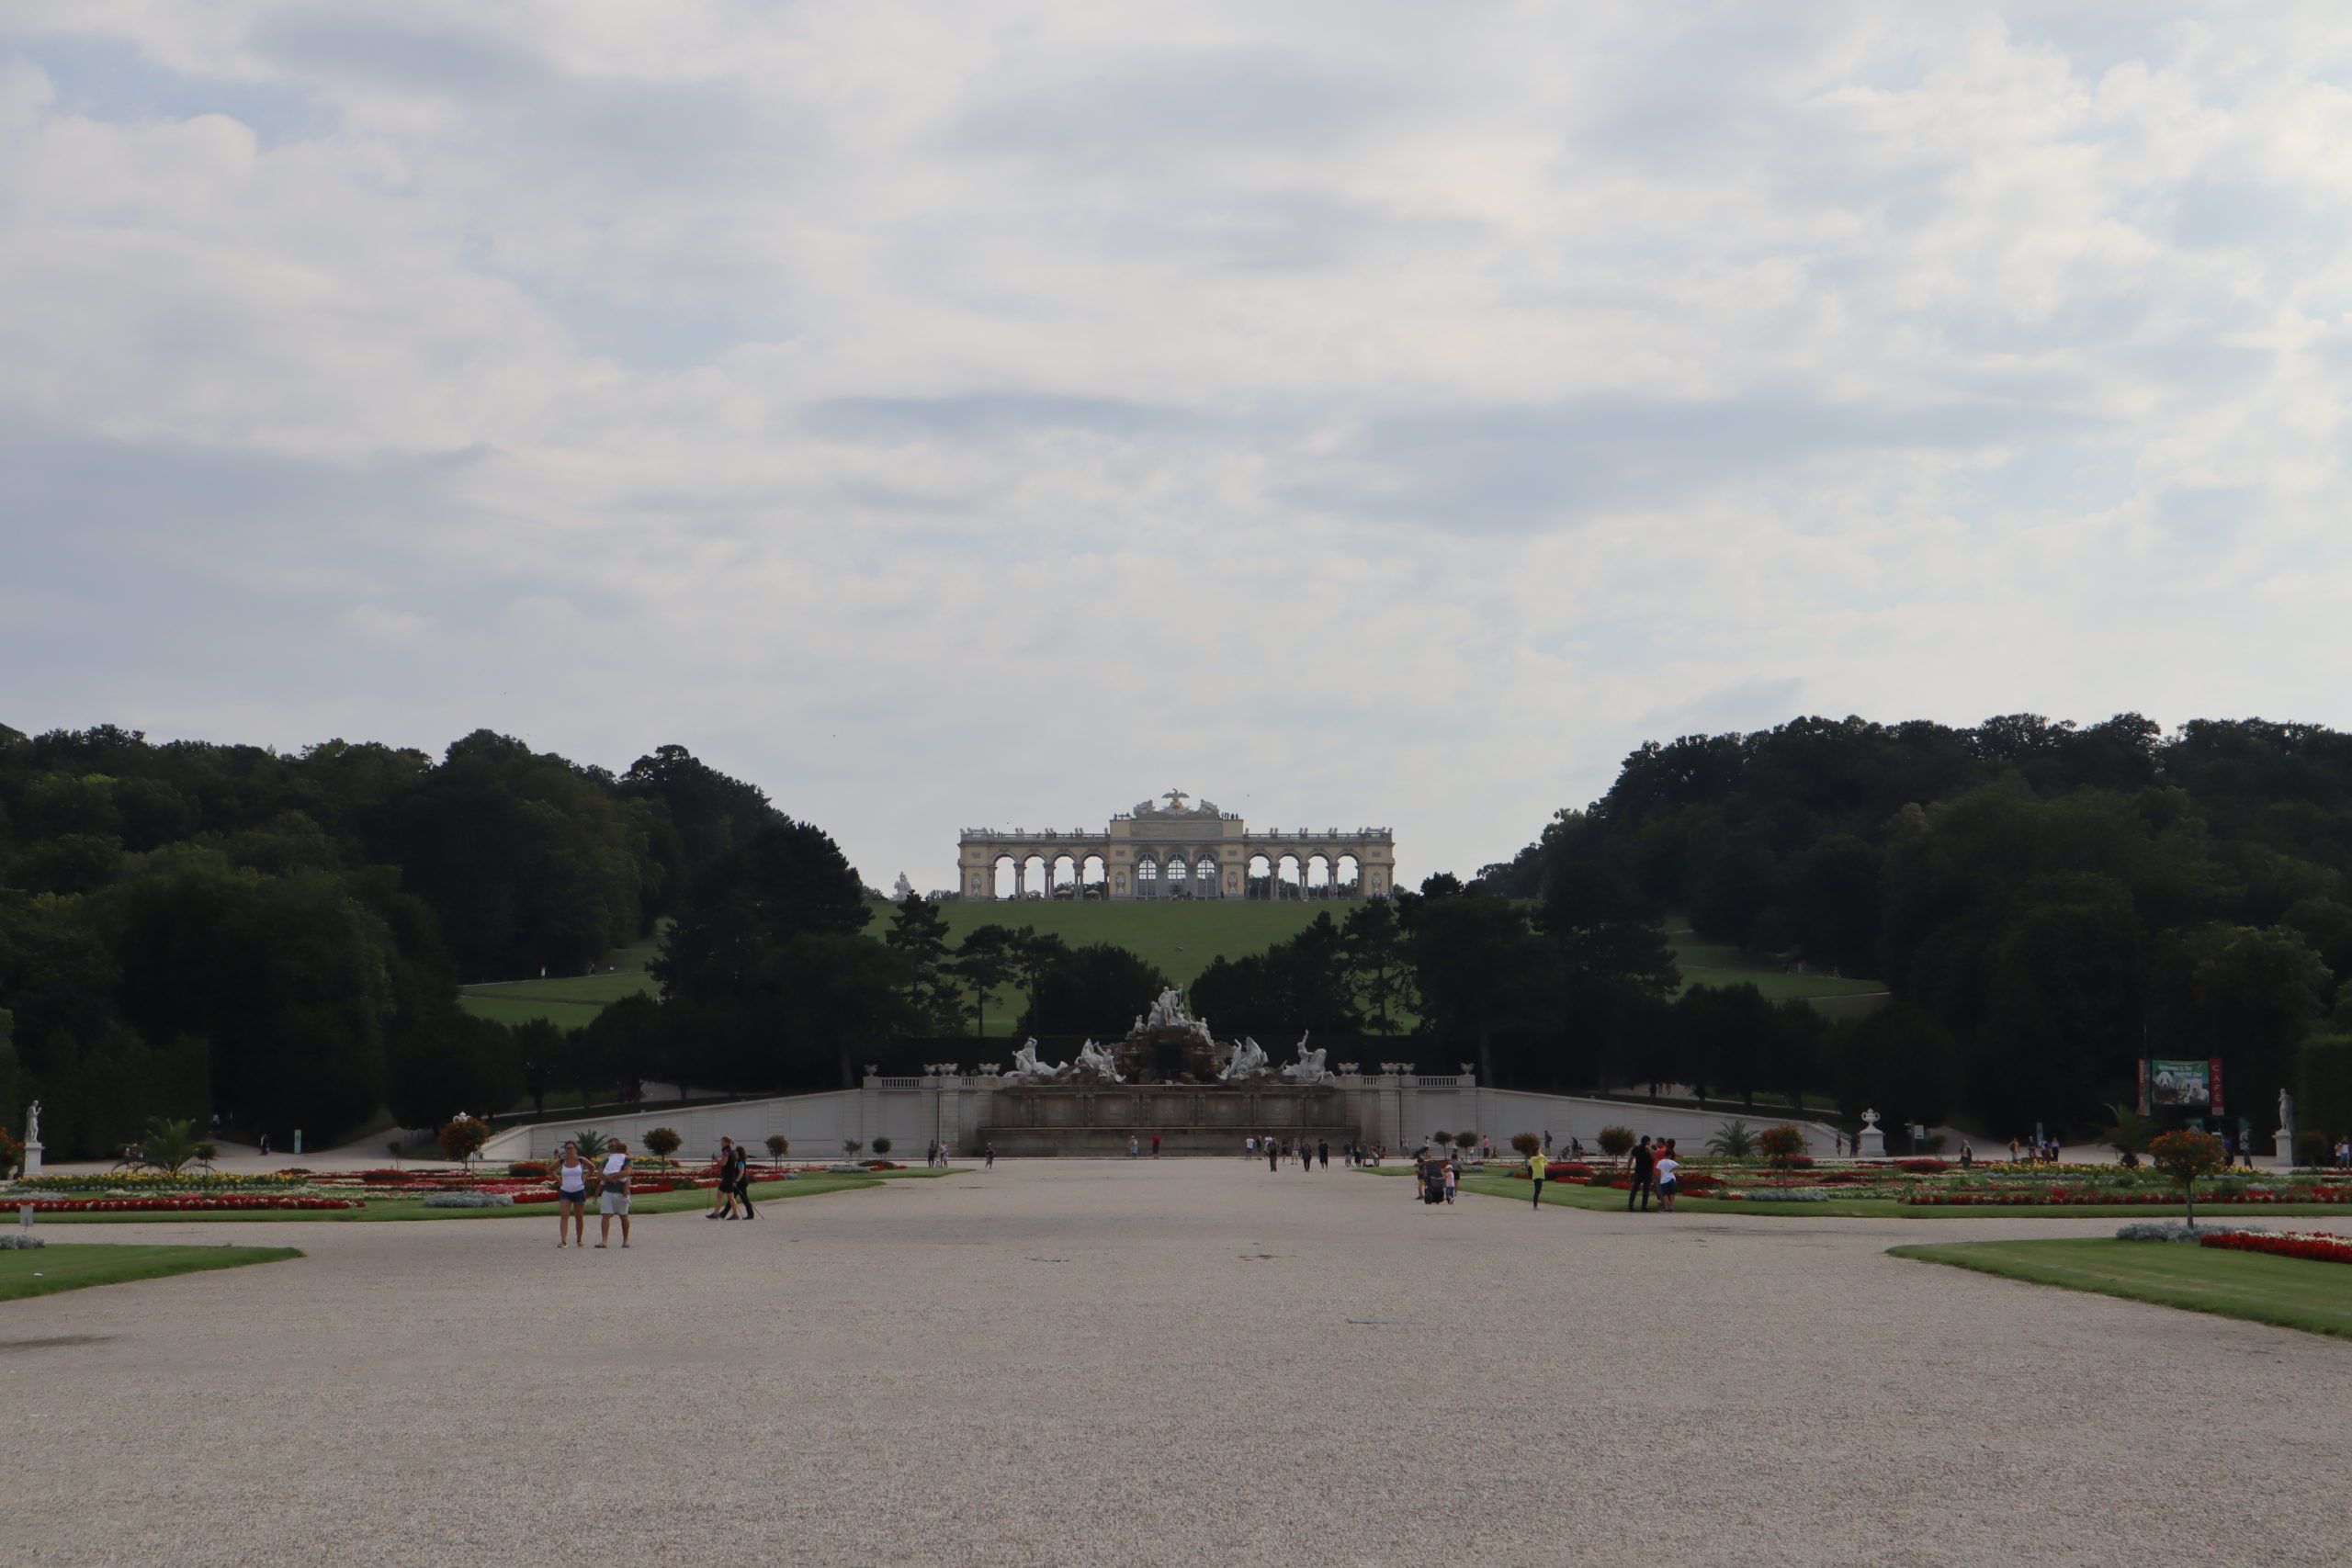 Palacio-Schönbrunn